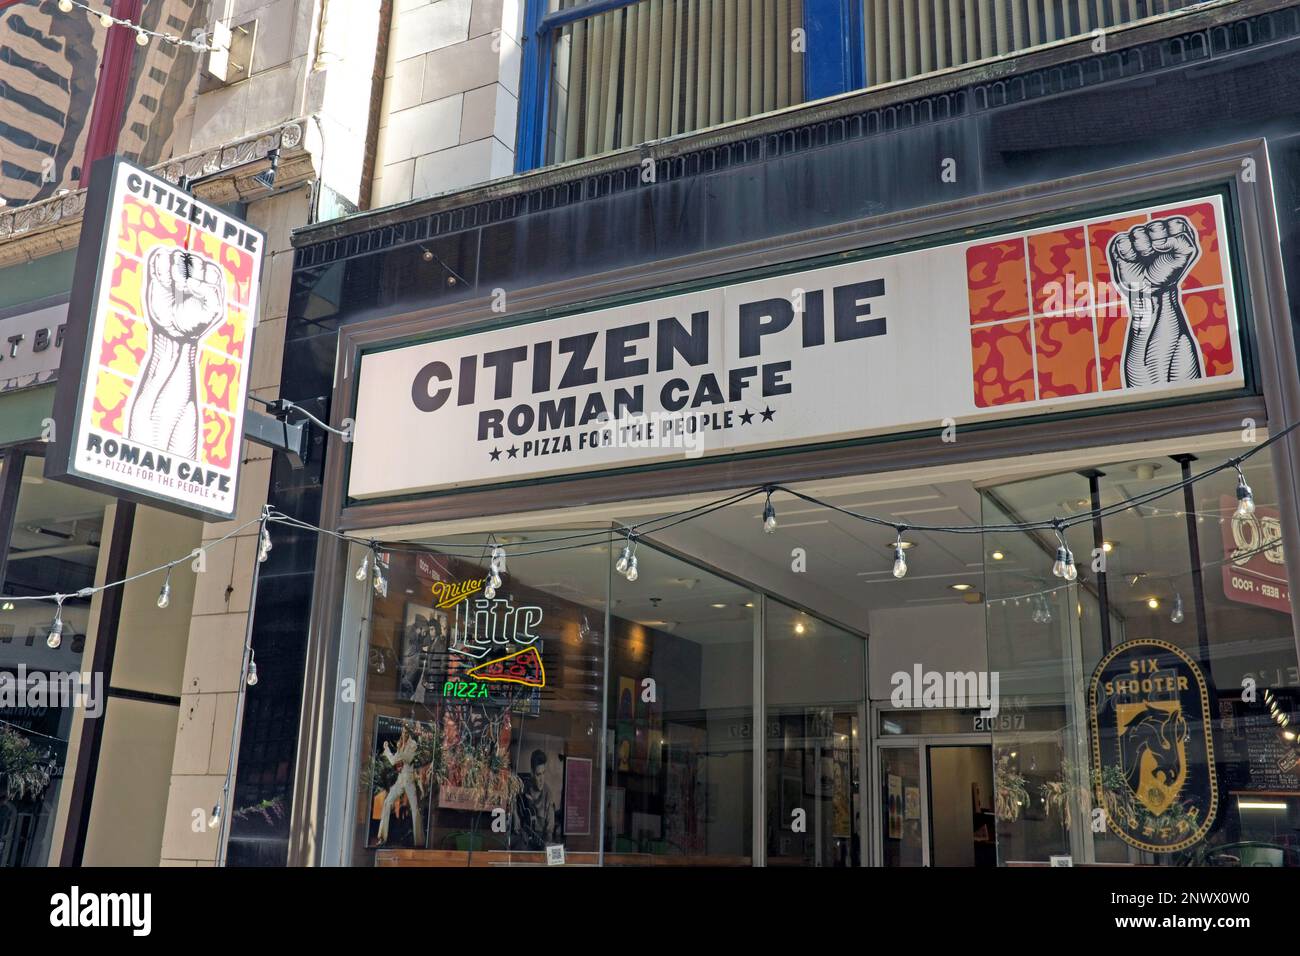 Citizen Pie Roman Cafe Pizza pour les gens sur East 4th Street dans le Gateway District dans le centre-ville de Cleveland, Ohio, États-Unis. Banque D'Images